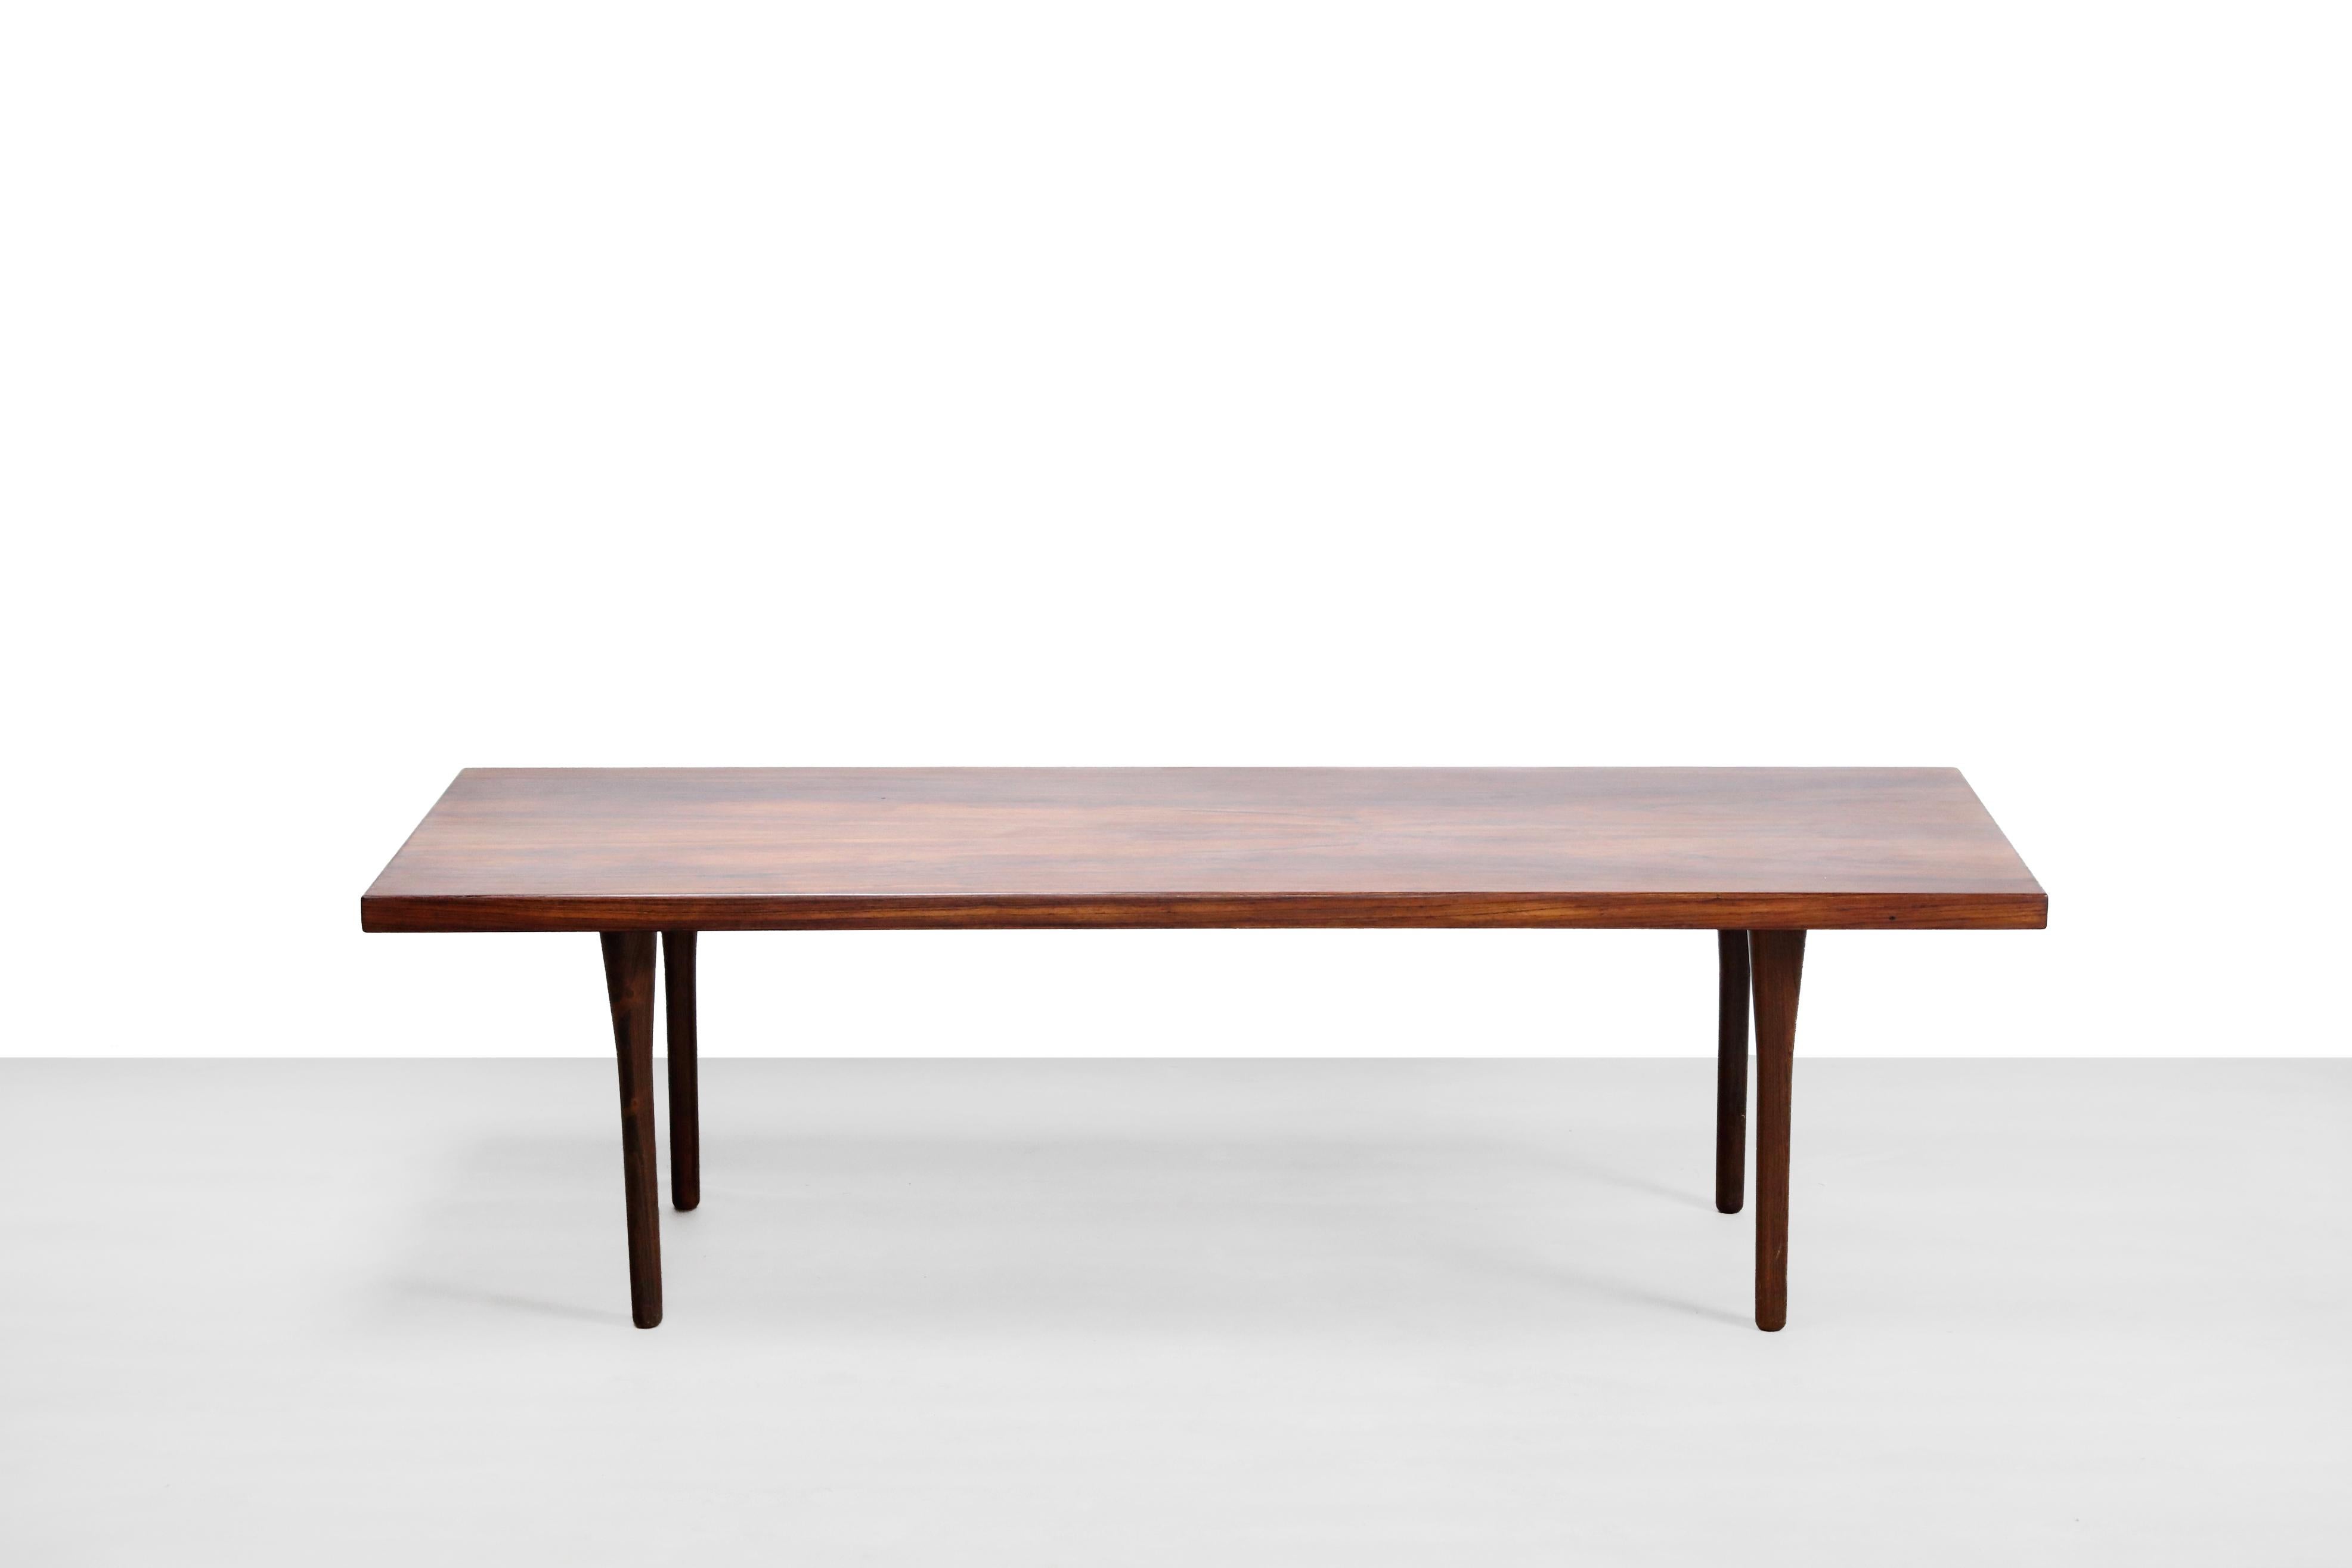 Belle table basse conçue par Nanna Ditzel et produite par Søren Wiladsen dans les années 1960 au Danemark. On ne rencontre pas souvent cette table basse. La table basse mesure 50 cm de haut, 170 cm de long et 60 cm de profondeur. La table est